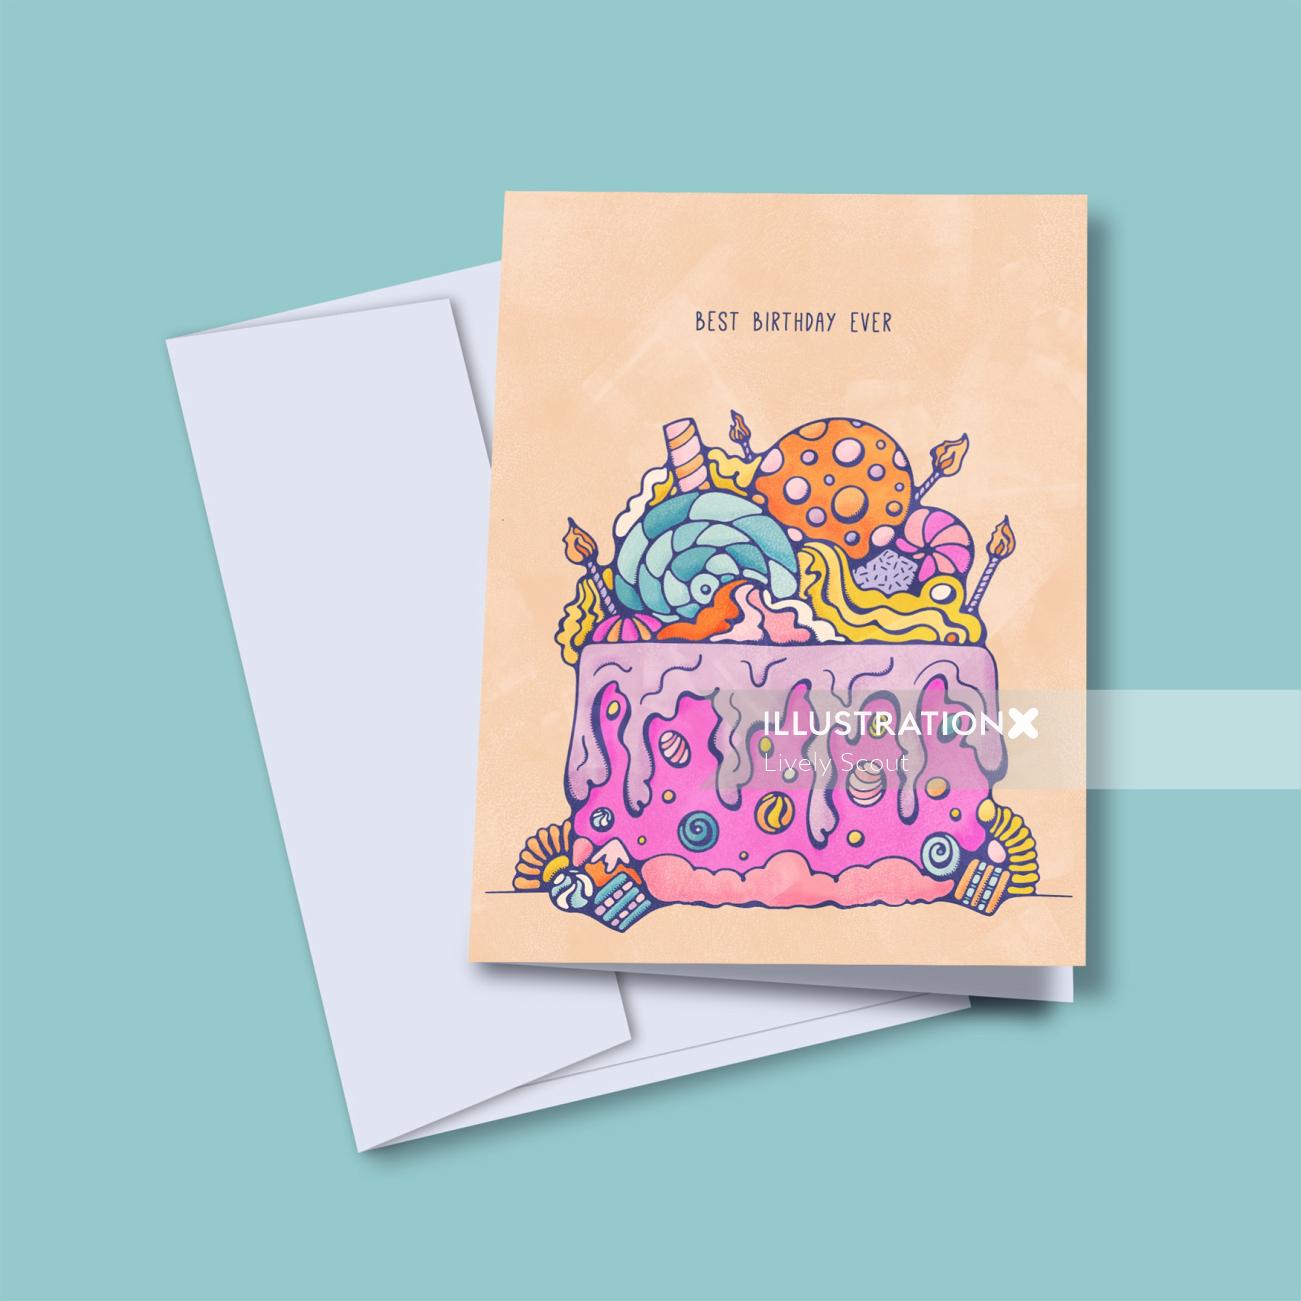 贺卡上覆盖着甜食的彩色生日蛋糕